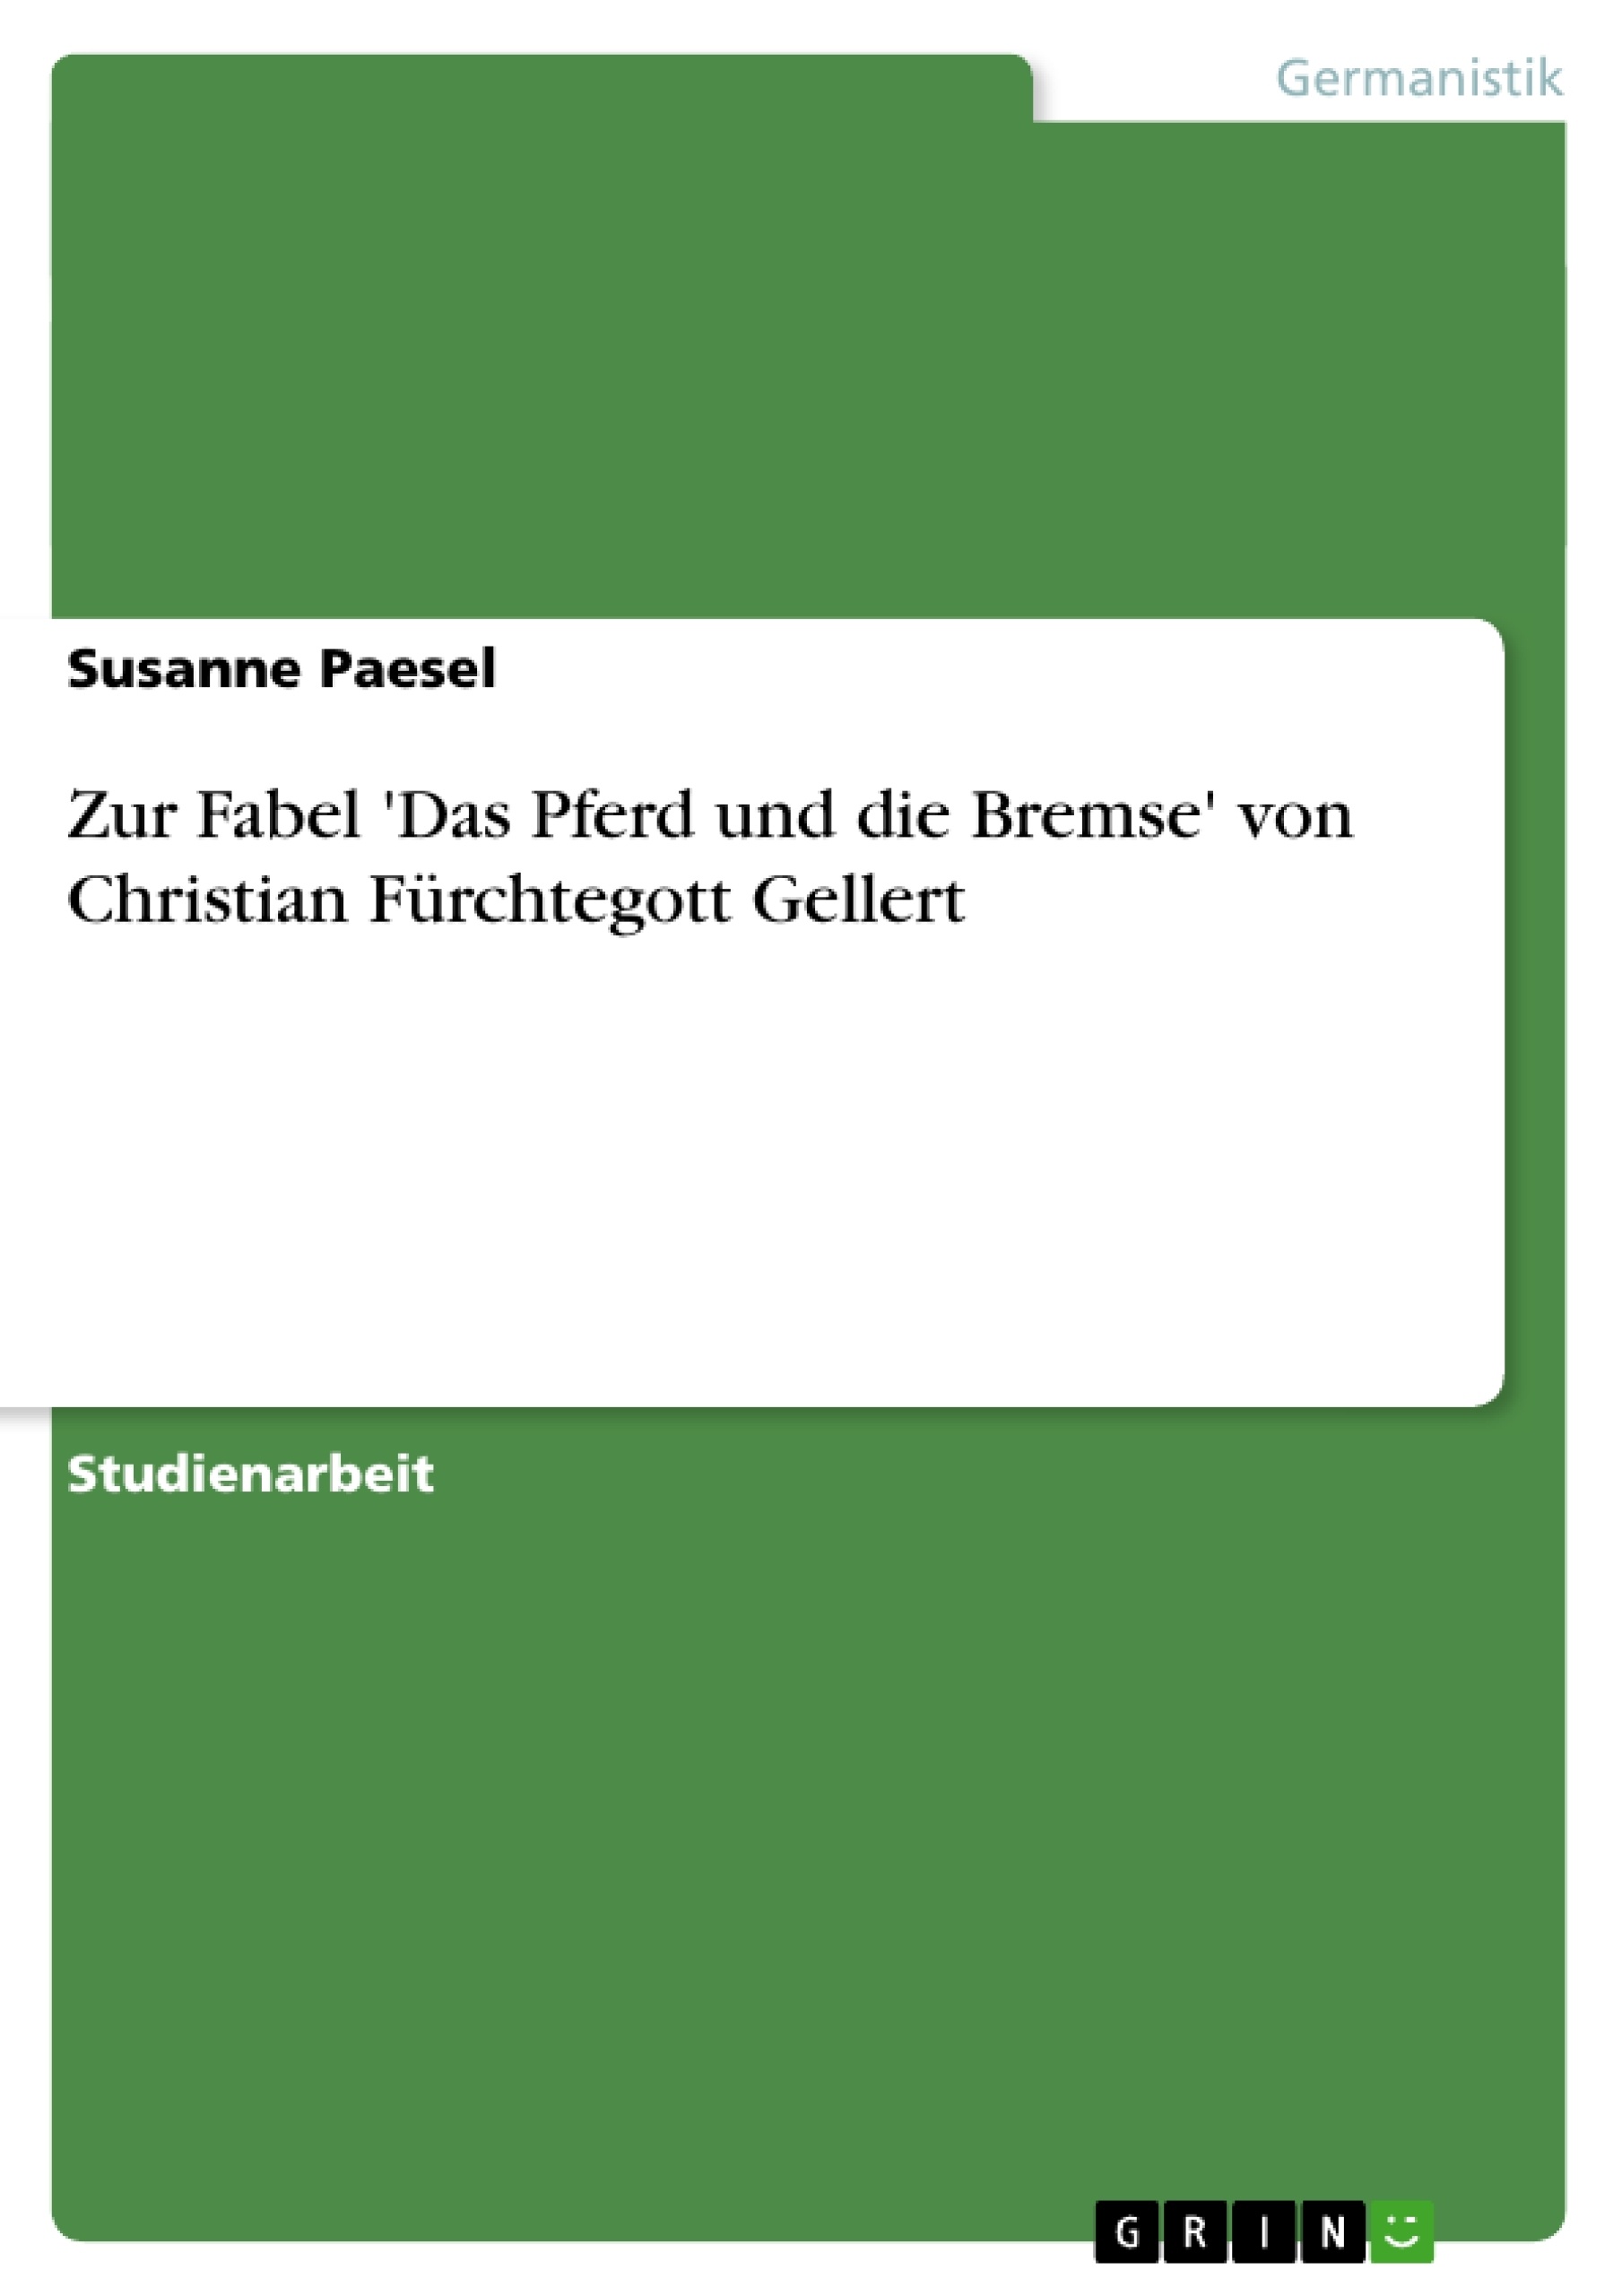 Title: Zur Fabel 'Das Pferd und die Bremse' von Christian Fürchtegott Gellert